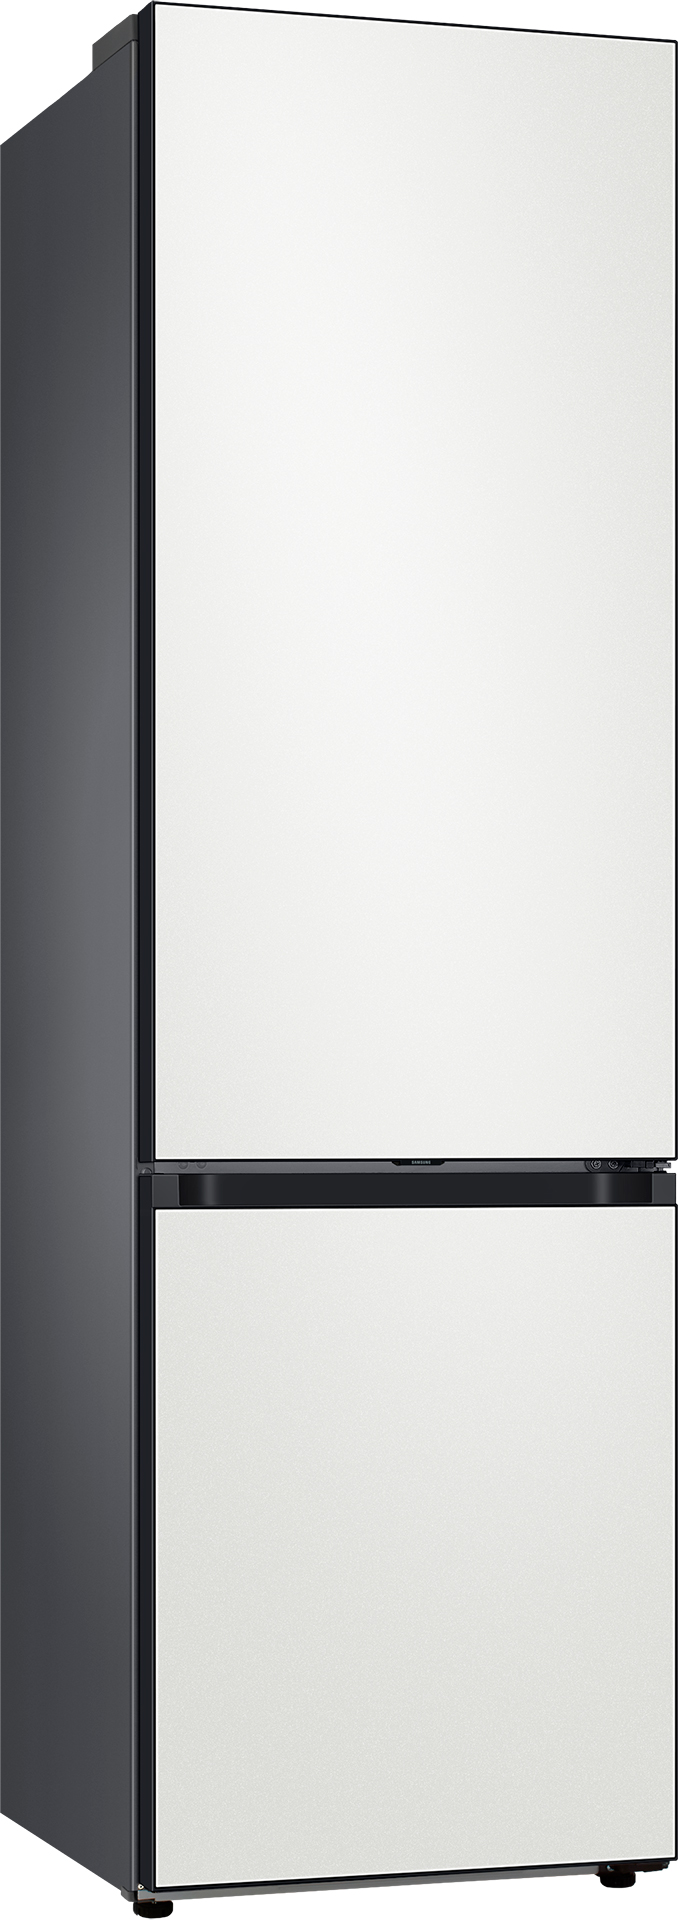 Холодильник Samsung RB38A6B62AP/UA отзывы - изображения 5